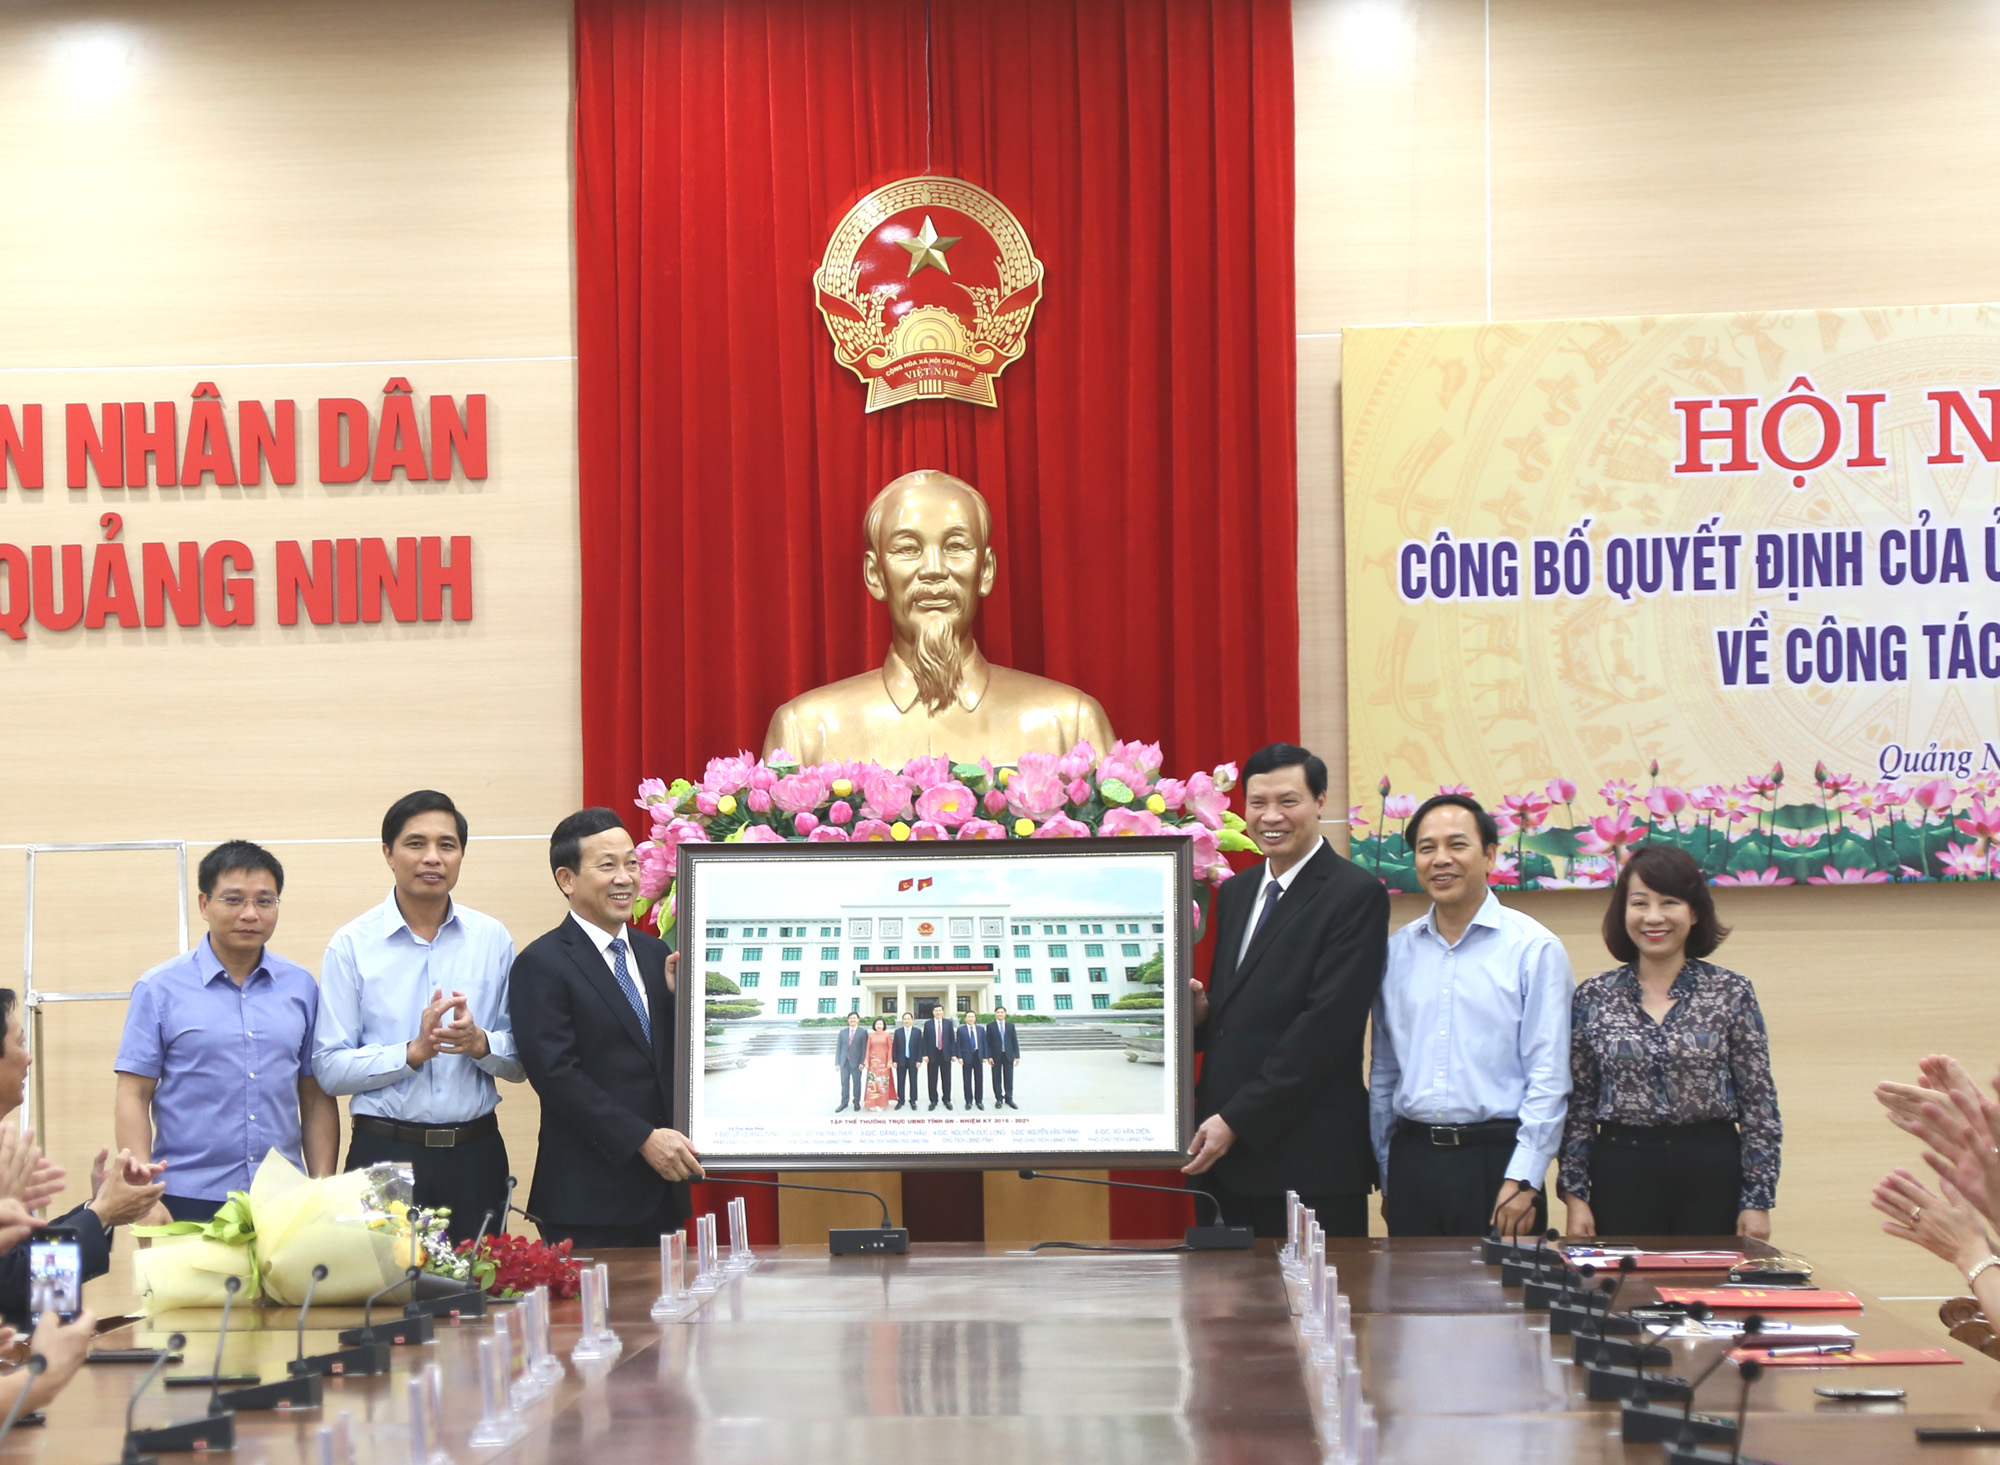 Các đồng chí lãnh đạo tỉnh tặng quà lưu niệm cho đồng chí Nguyễn Văn Thành.